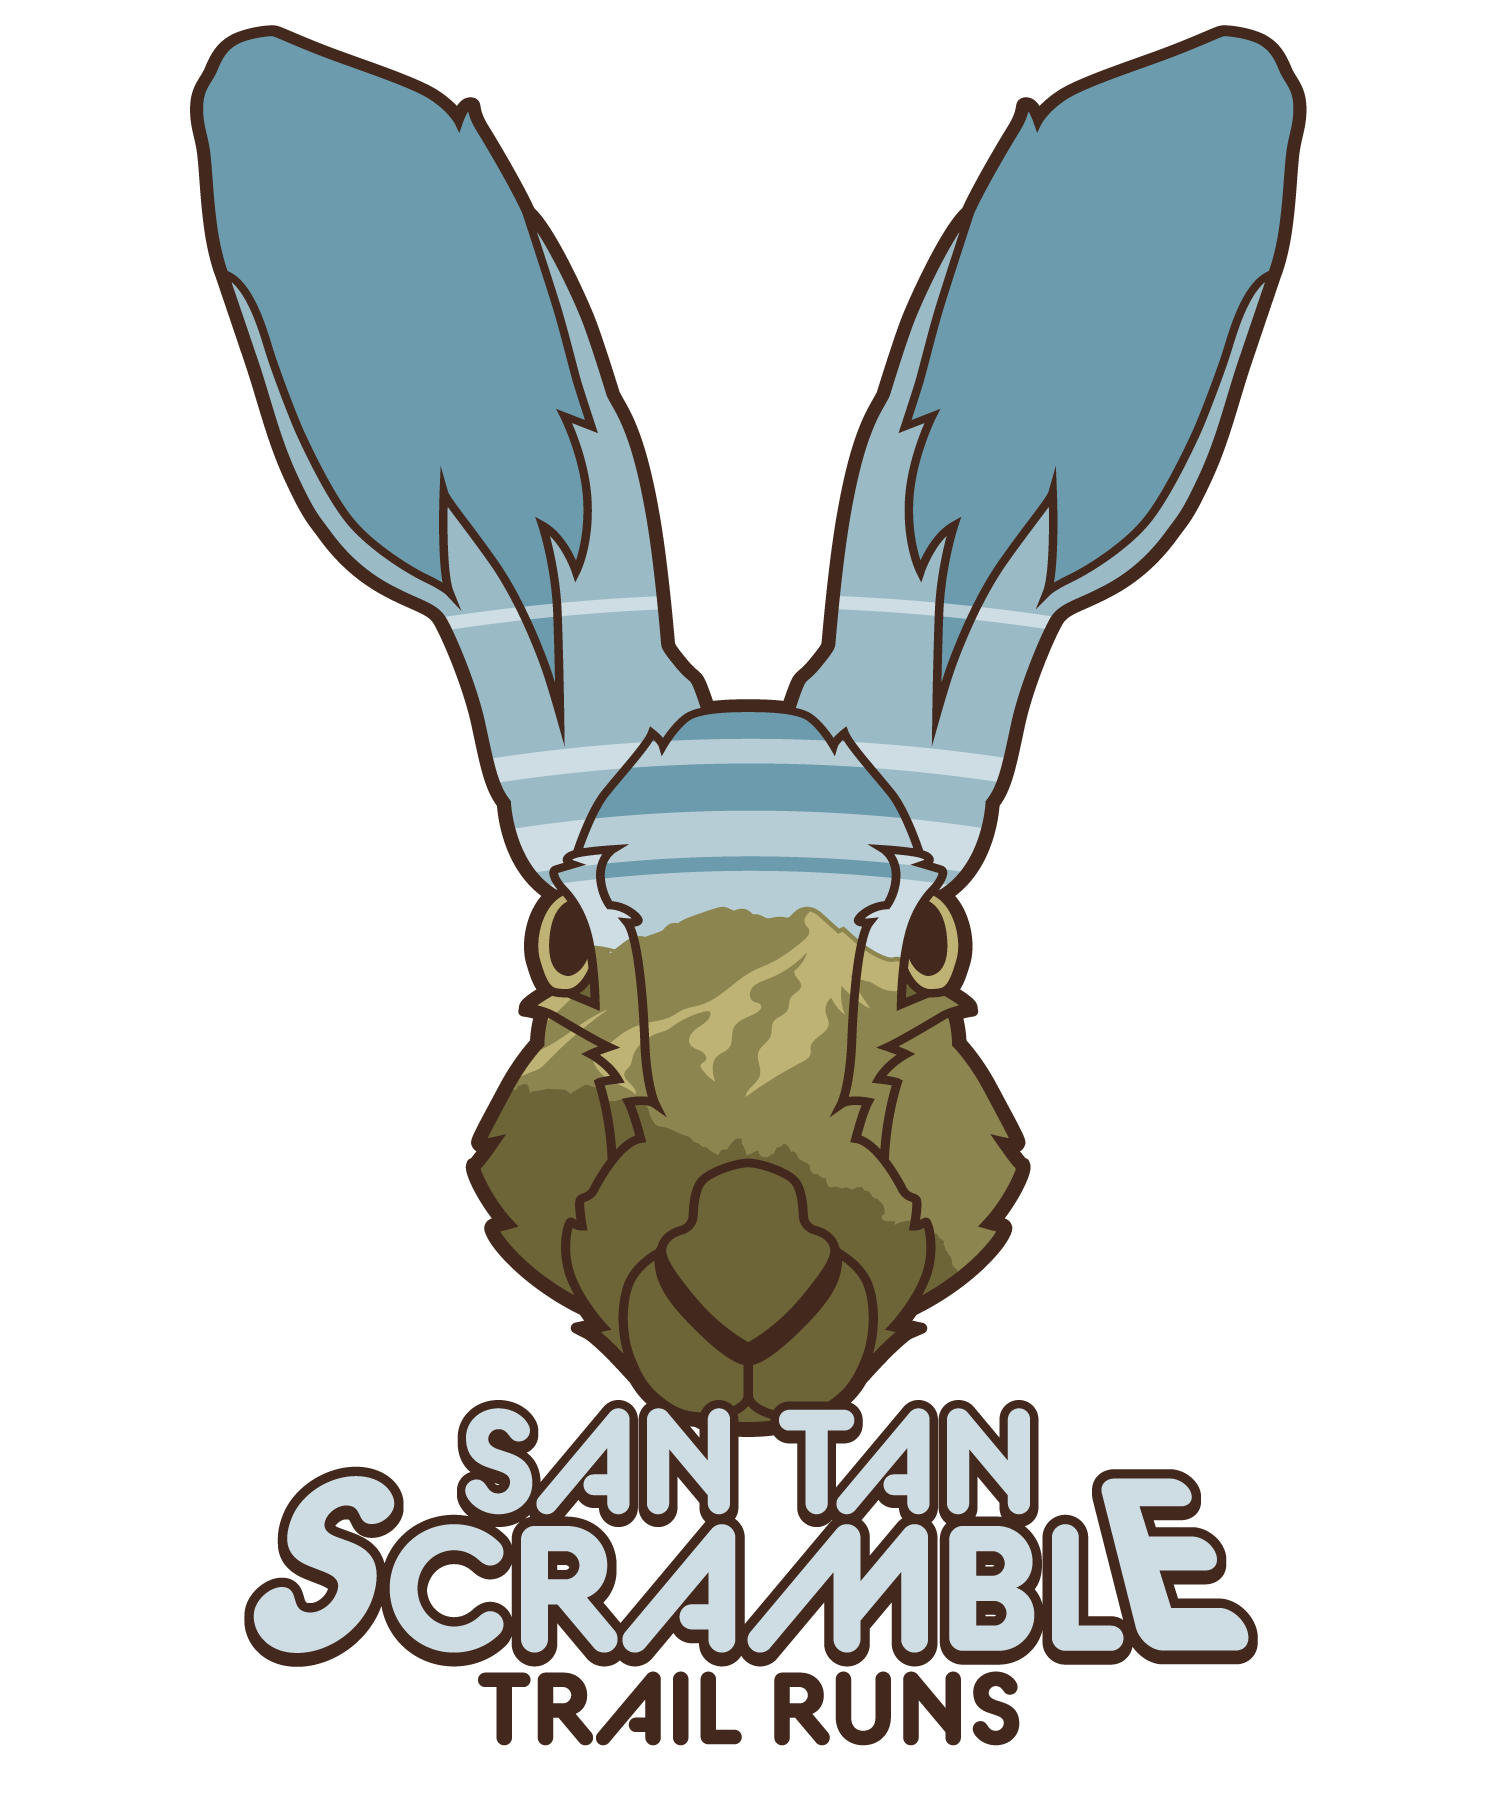 San Tan Scramble Trail Runs logo on RaceRaves